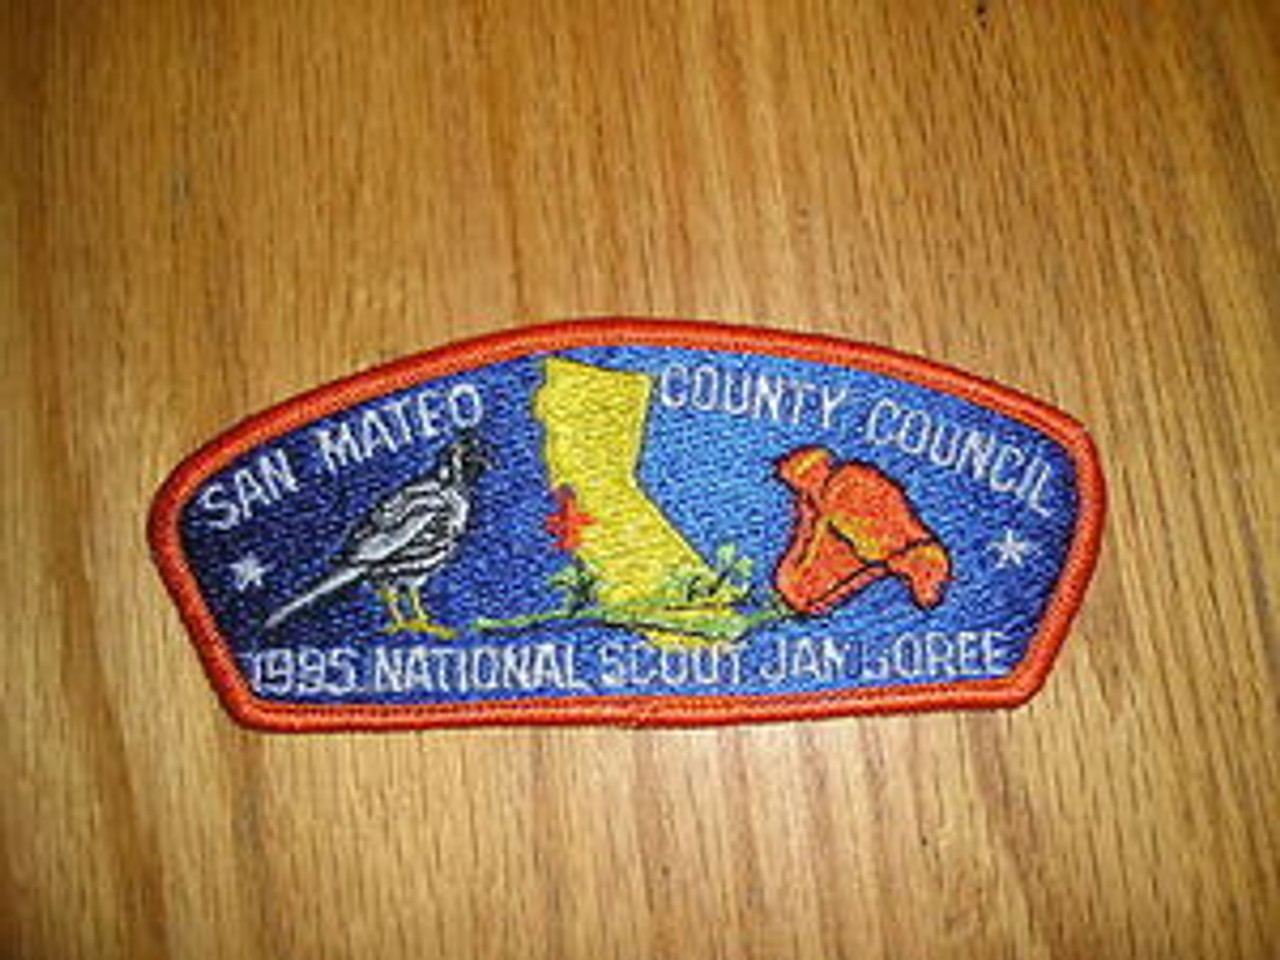 1985 National Jamboree JSP - San Mateo County Council